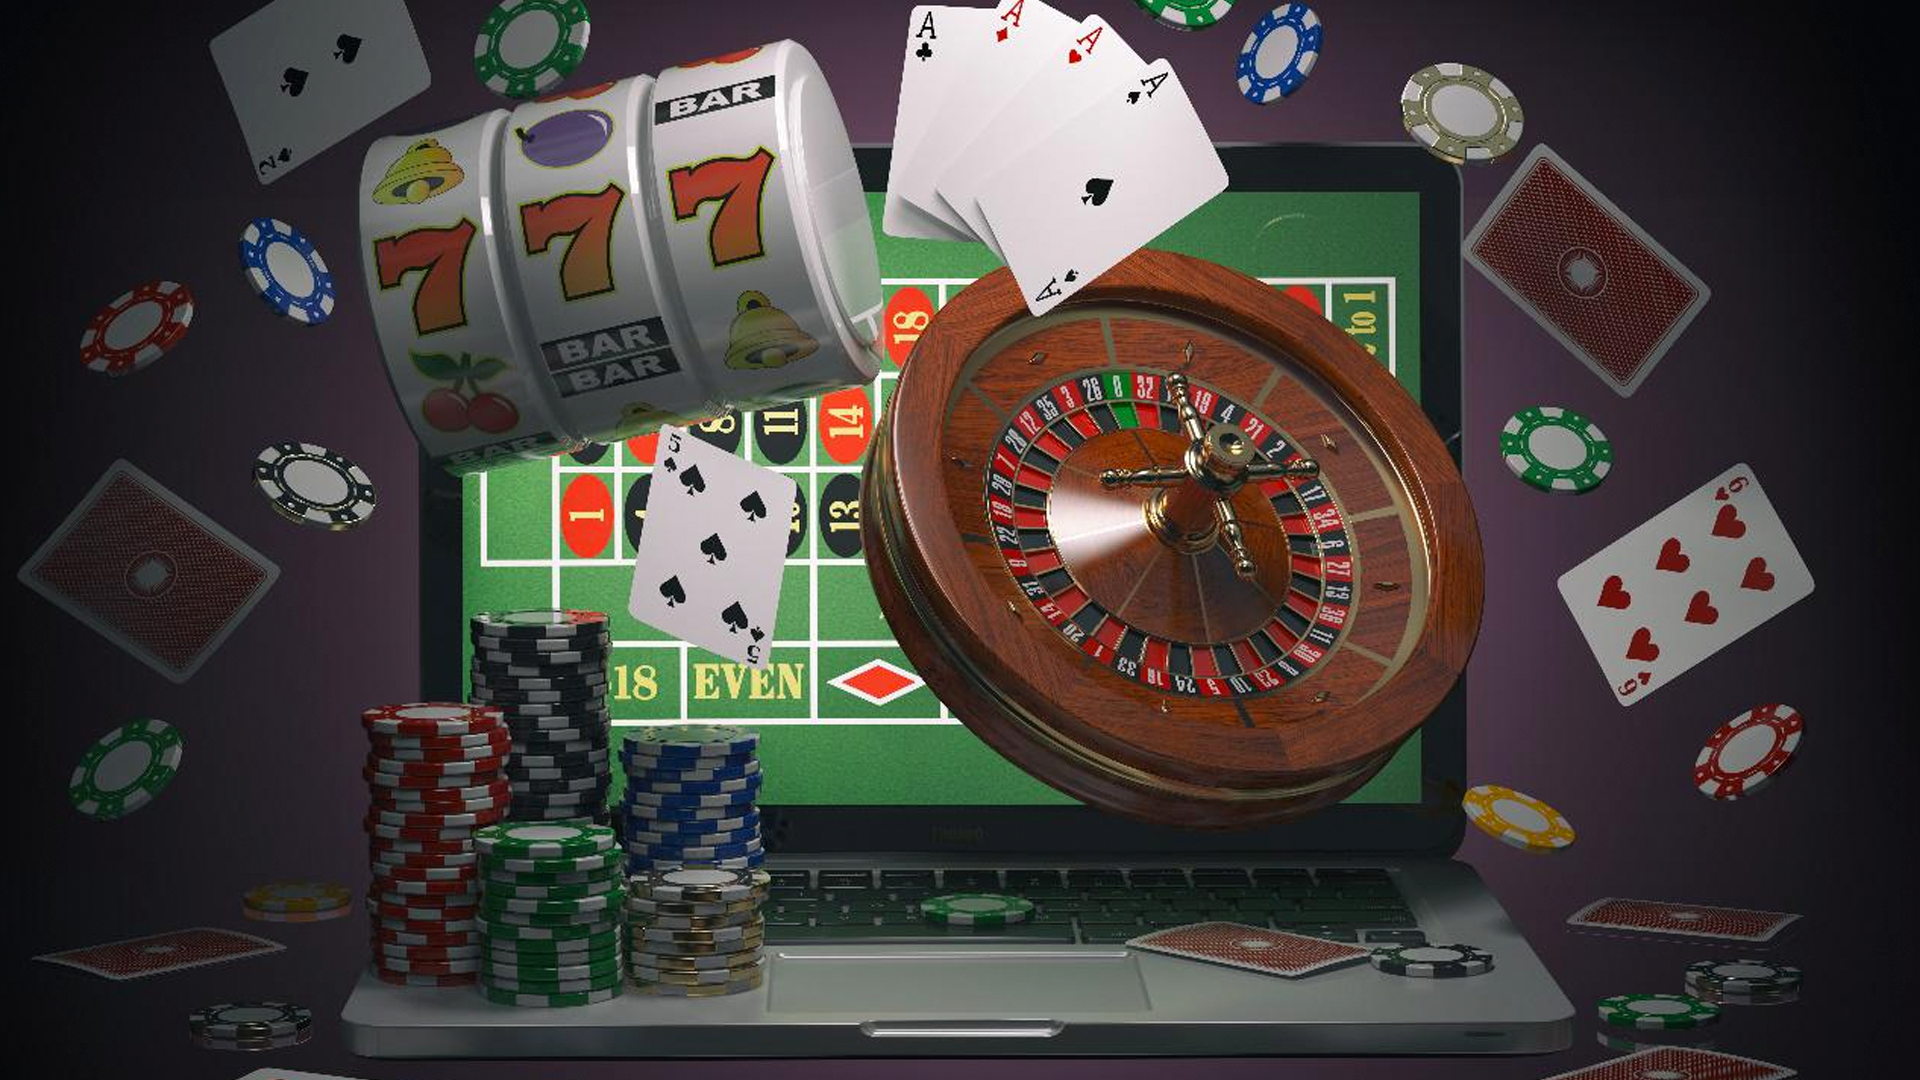 Casino Online Argentina Mercadopago es tu peor enemigo. 10 formas de derrotarlo